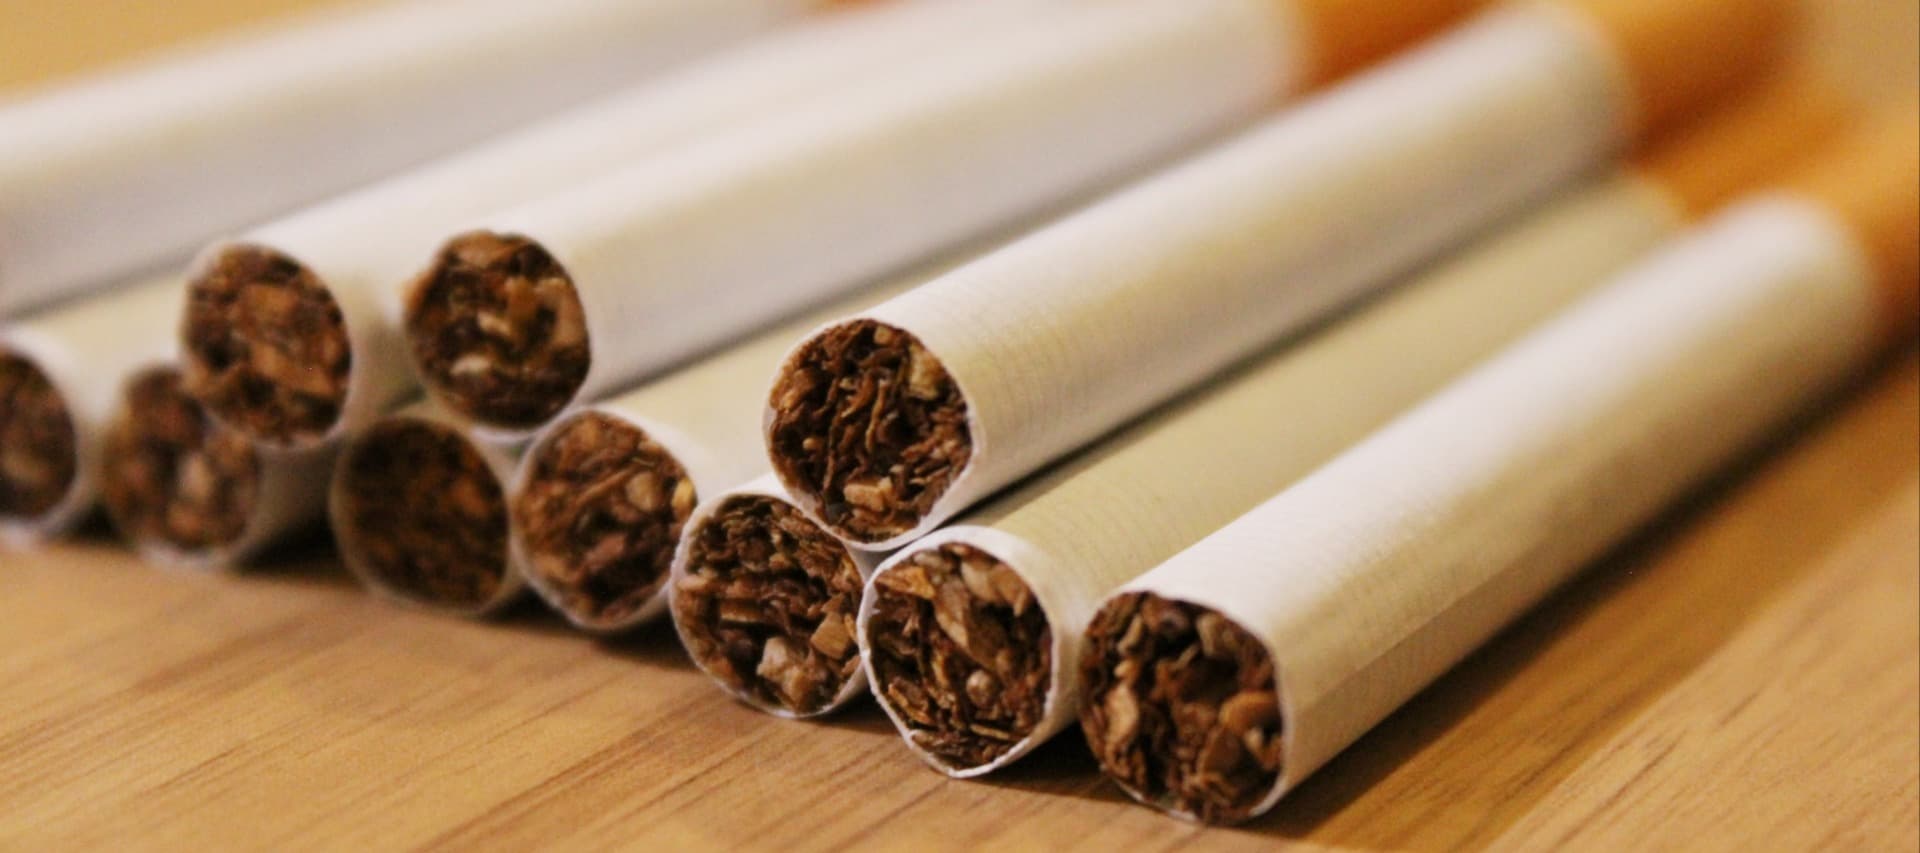 Фото новости: "«Ромир»: россияне готовы покупать нелегальный табак при росте цен"